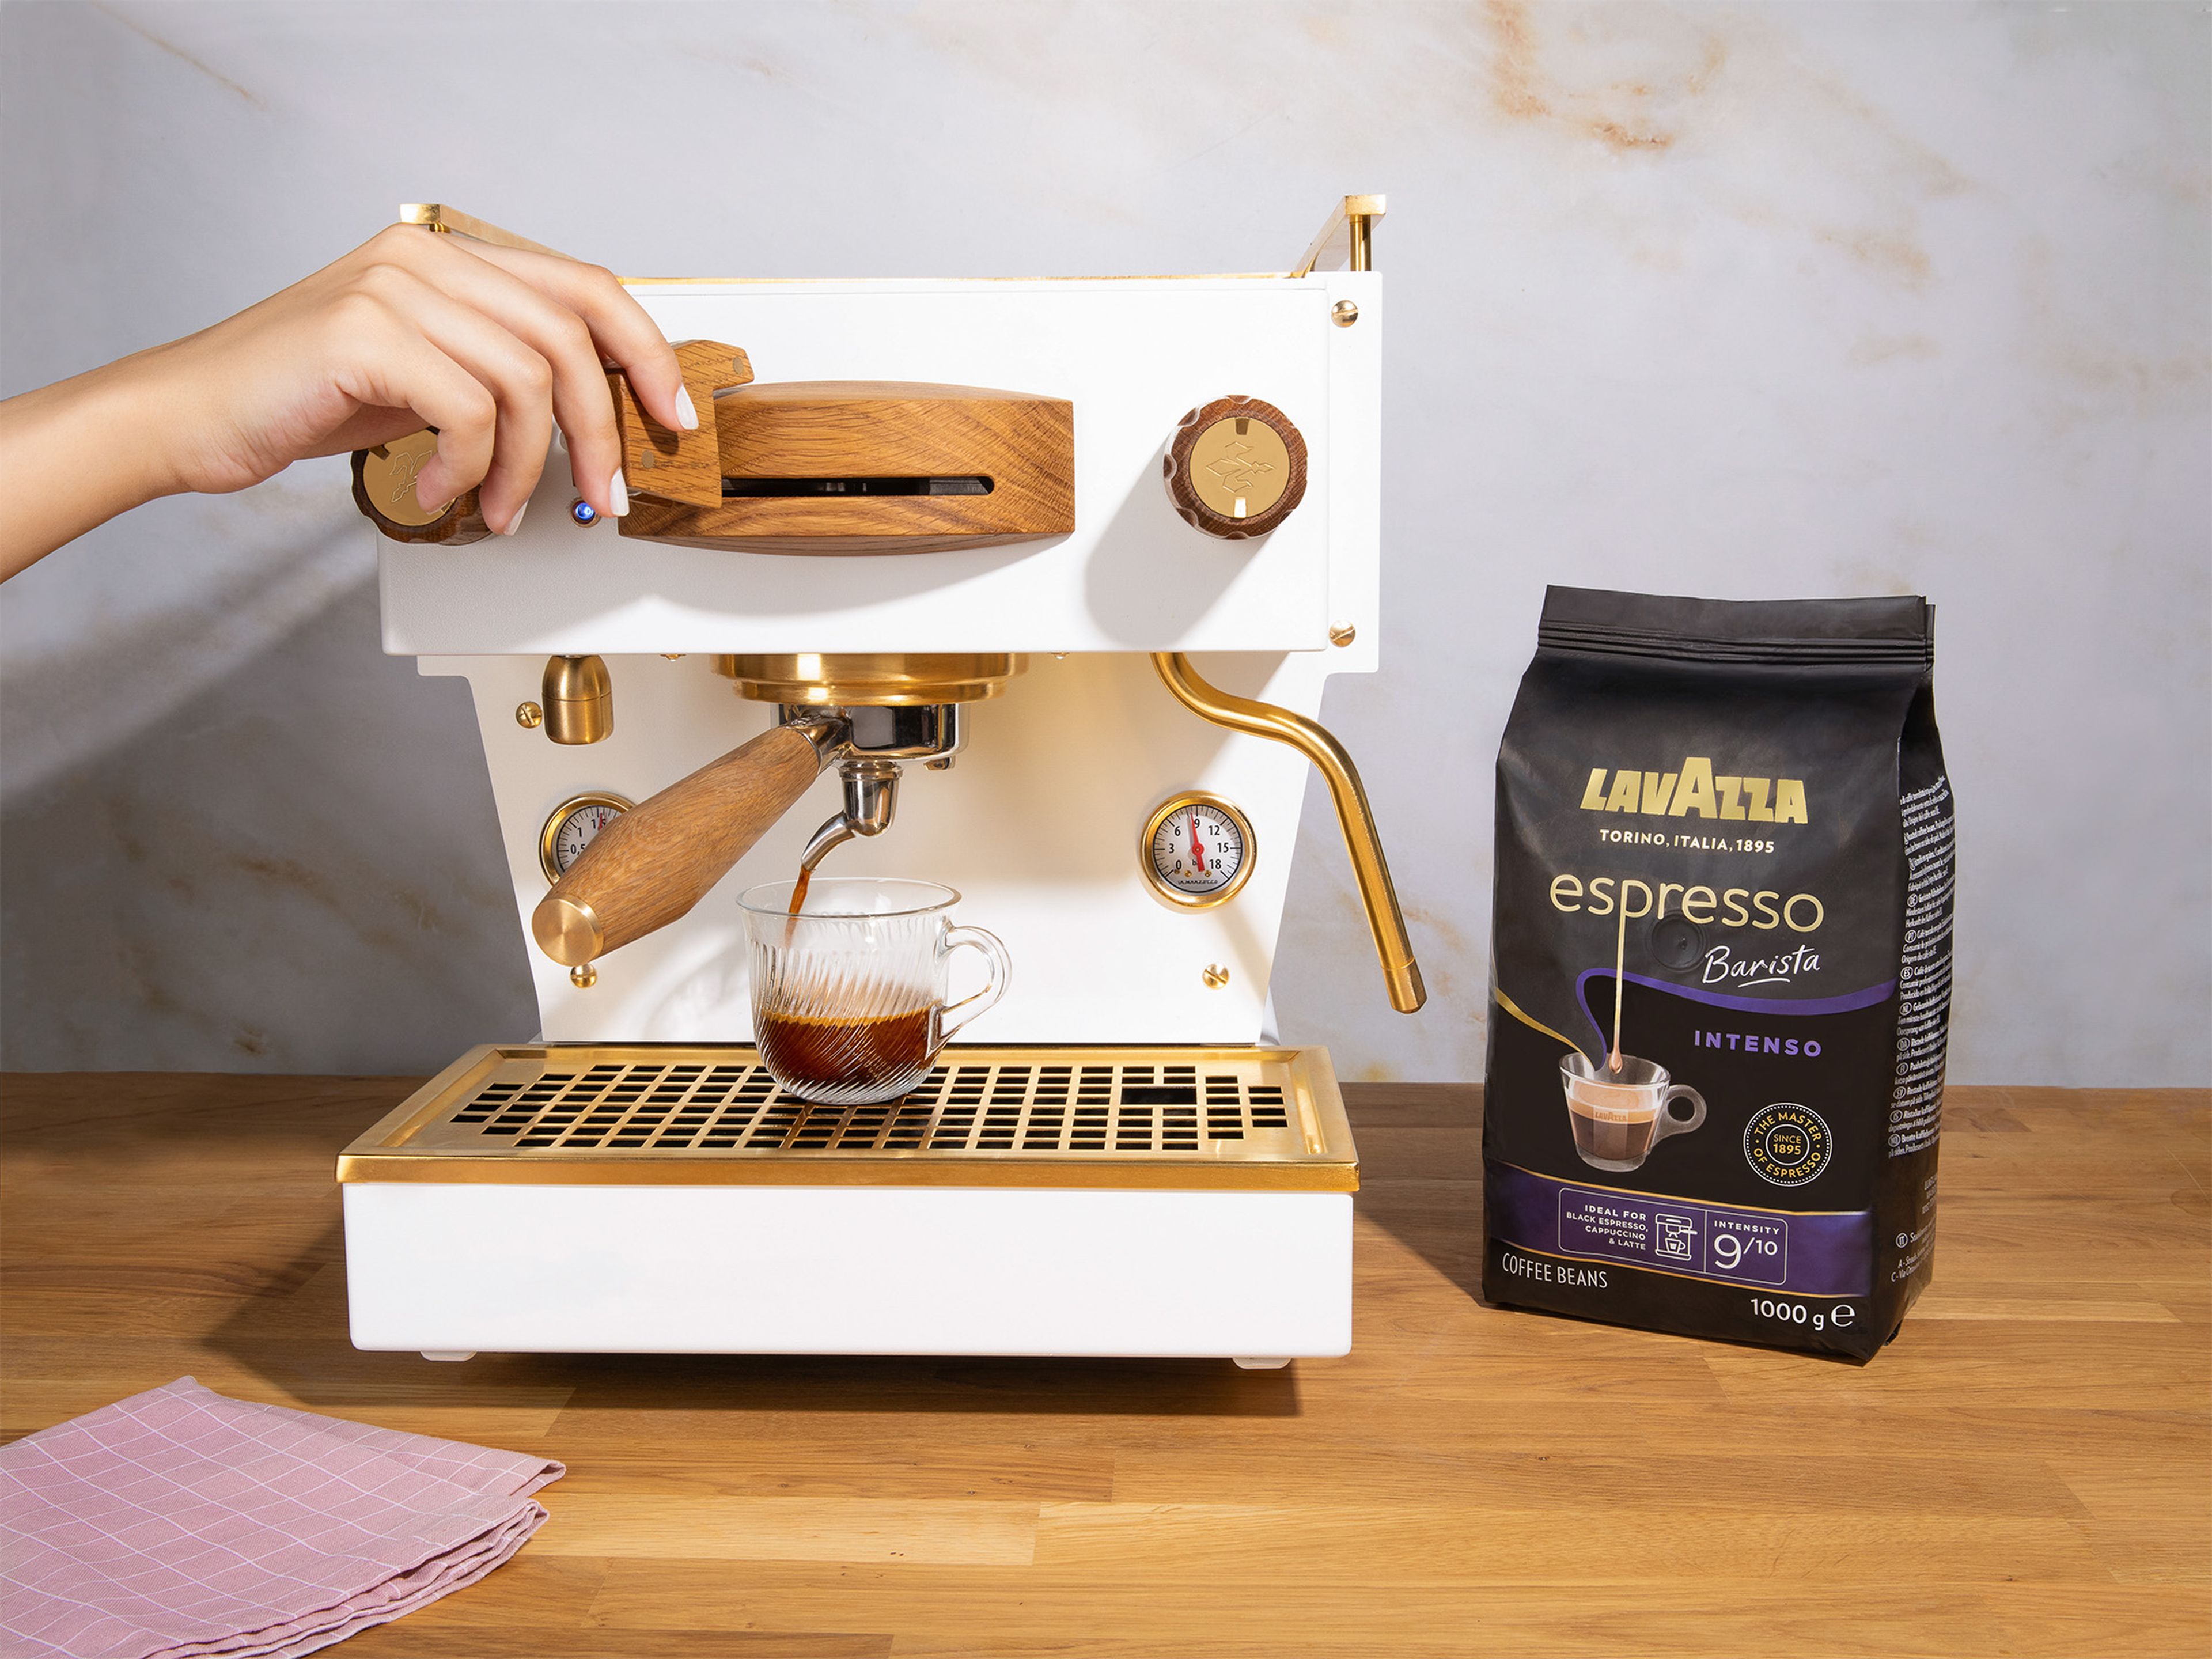 Lavazza Espresso Barista Intenso für die Siebträgermaschine mahlen, anschließend in der Siebträgermaschine brühen und beiseitestellen.